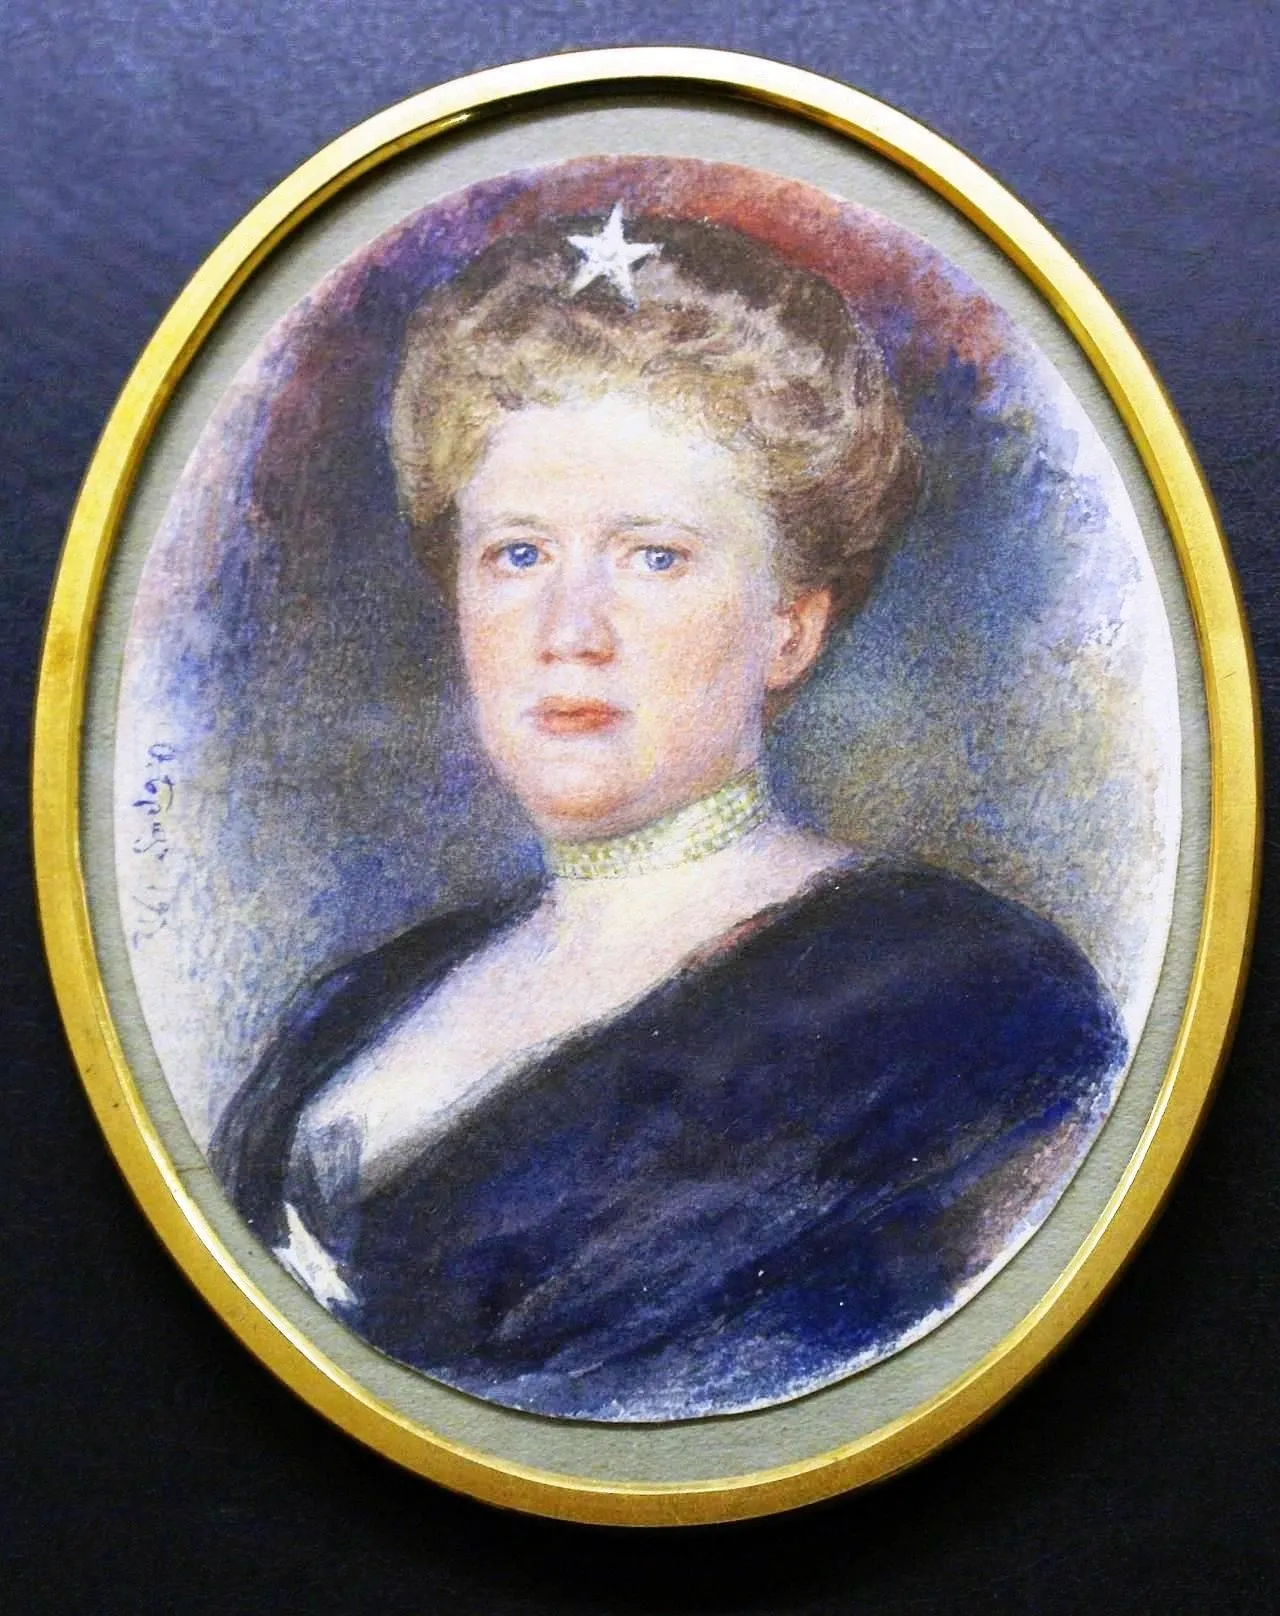 Кошунильдза Елизавета святовне 1831. Печать